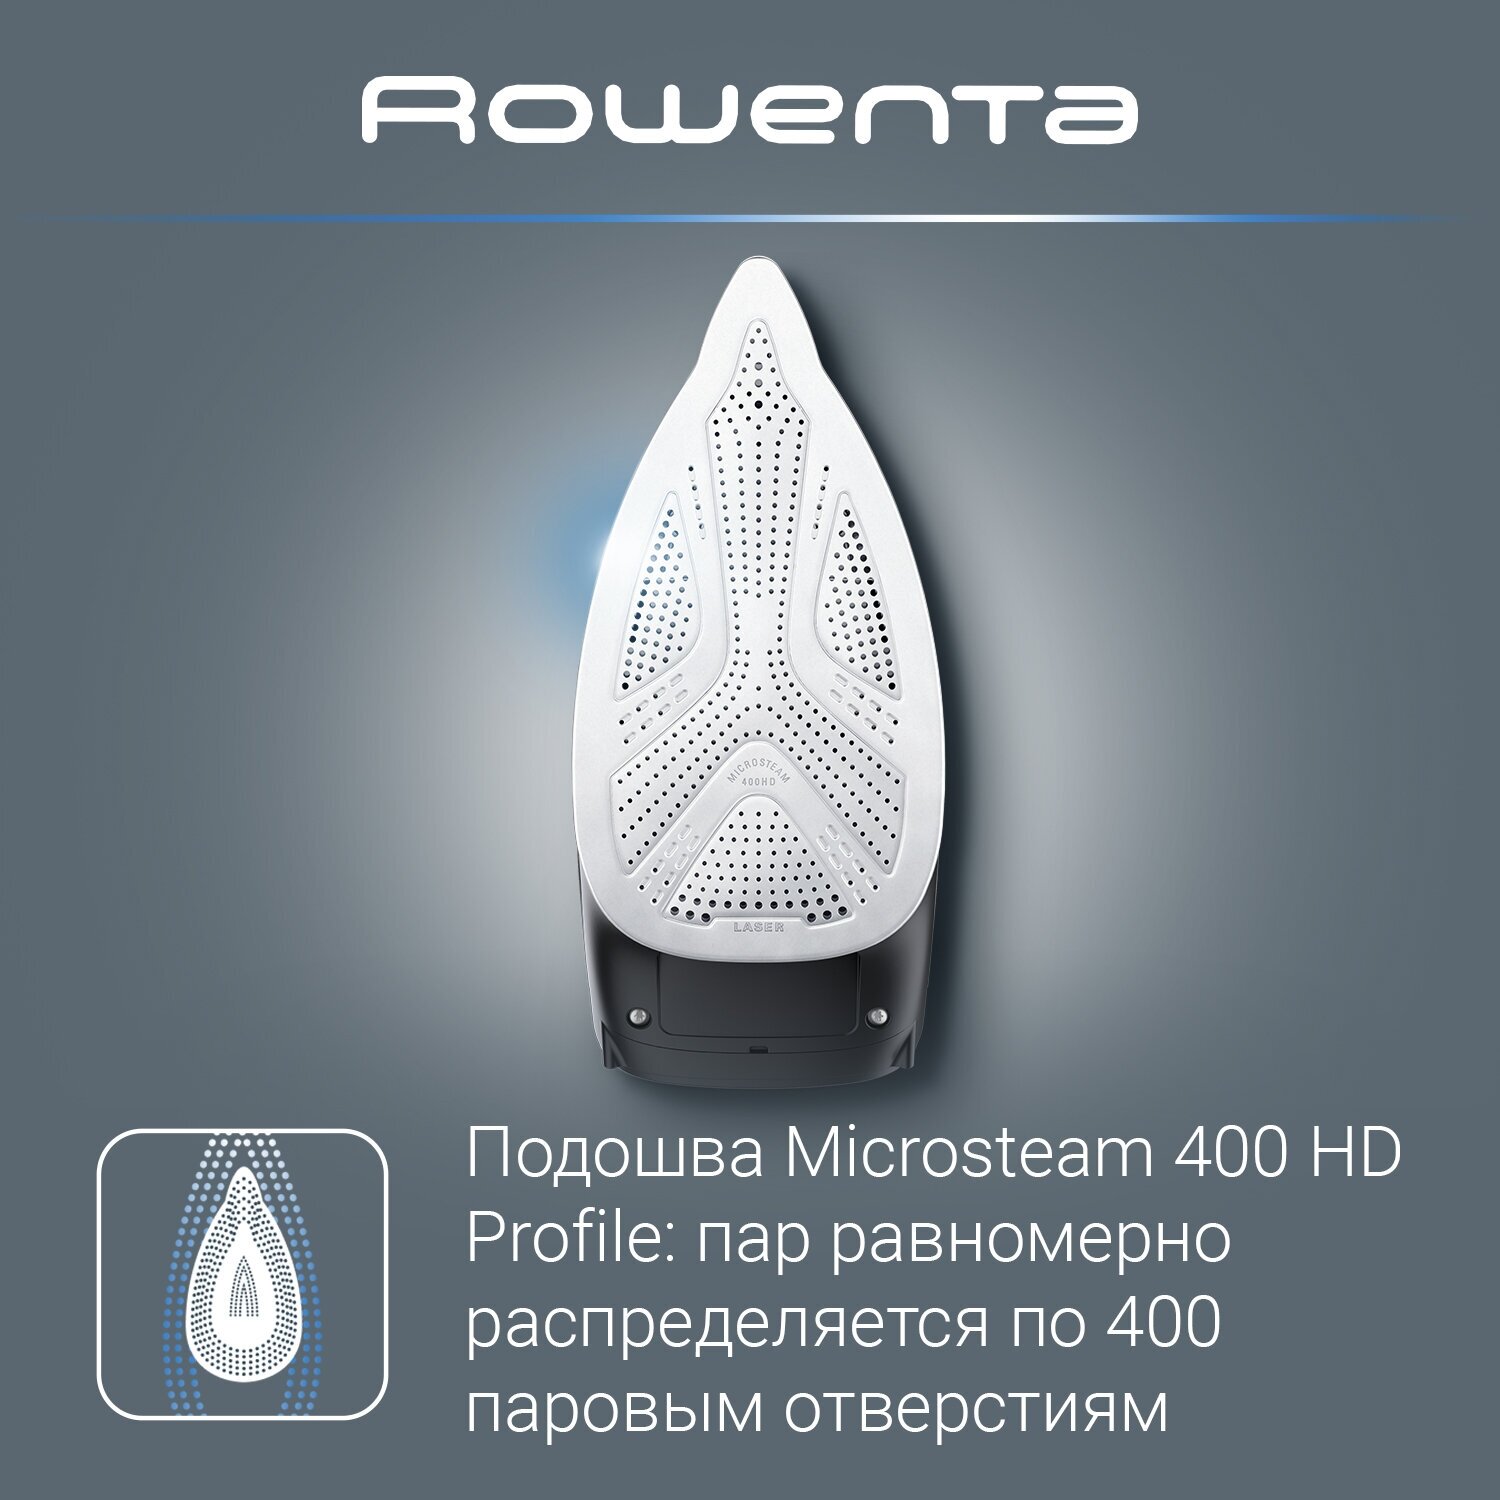 паровой утюг rowenta express steam dw4308d1 microsteam 300 2500 вт фото 63